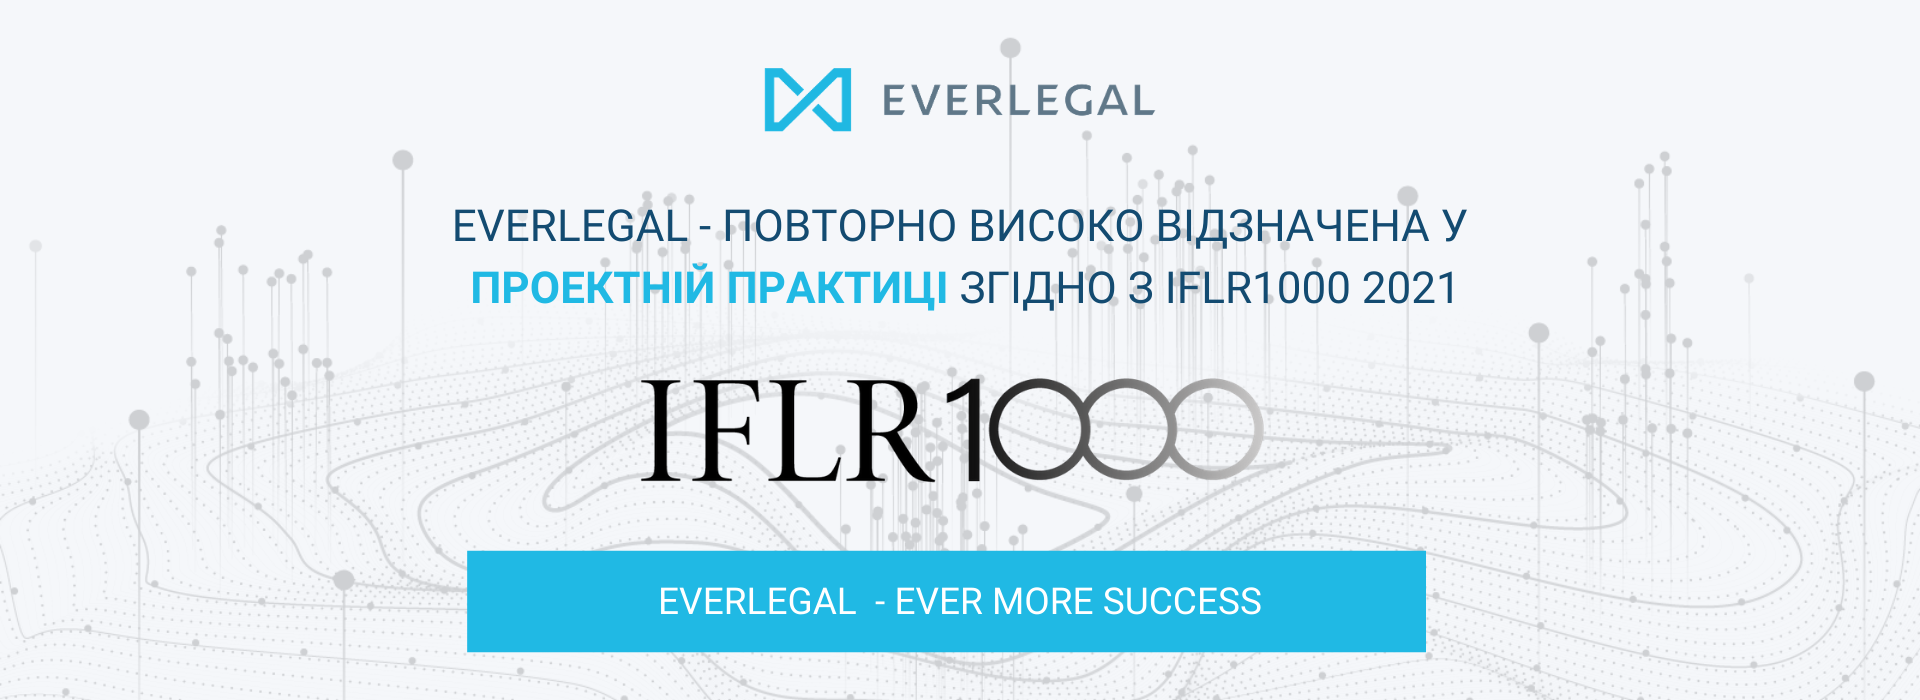 EVERLEGAL – повторно високо відзначена міжнародним рейтингом IFLR1000 2021